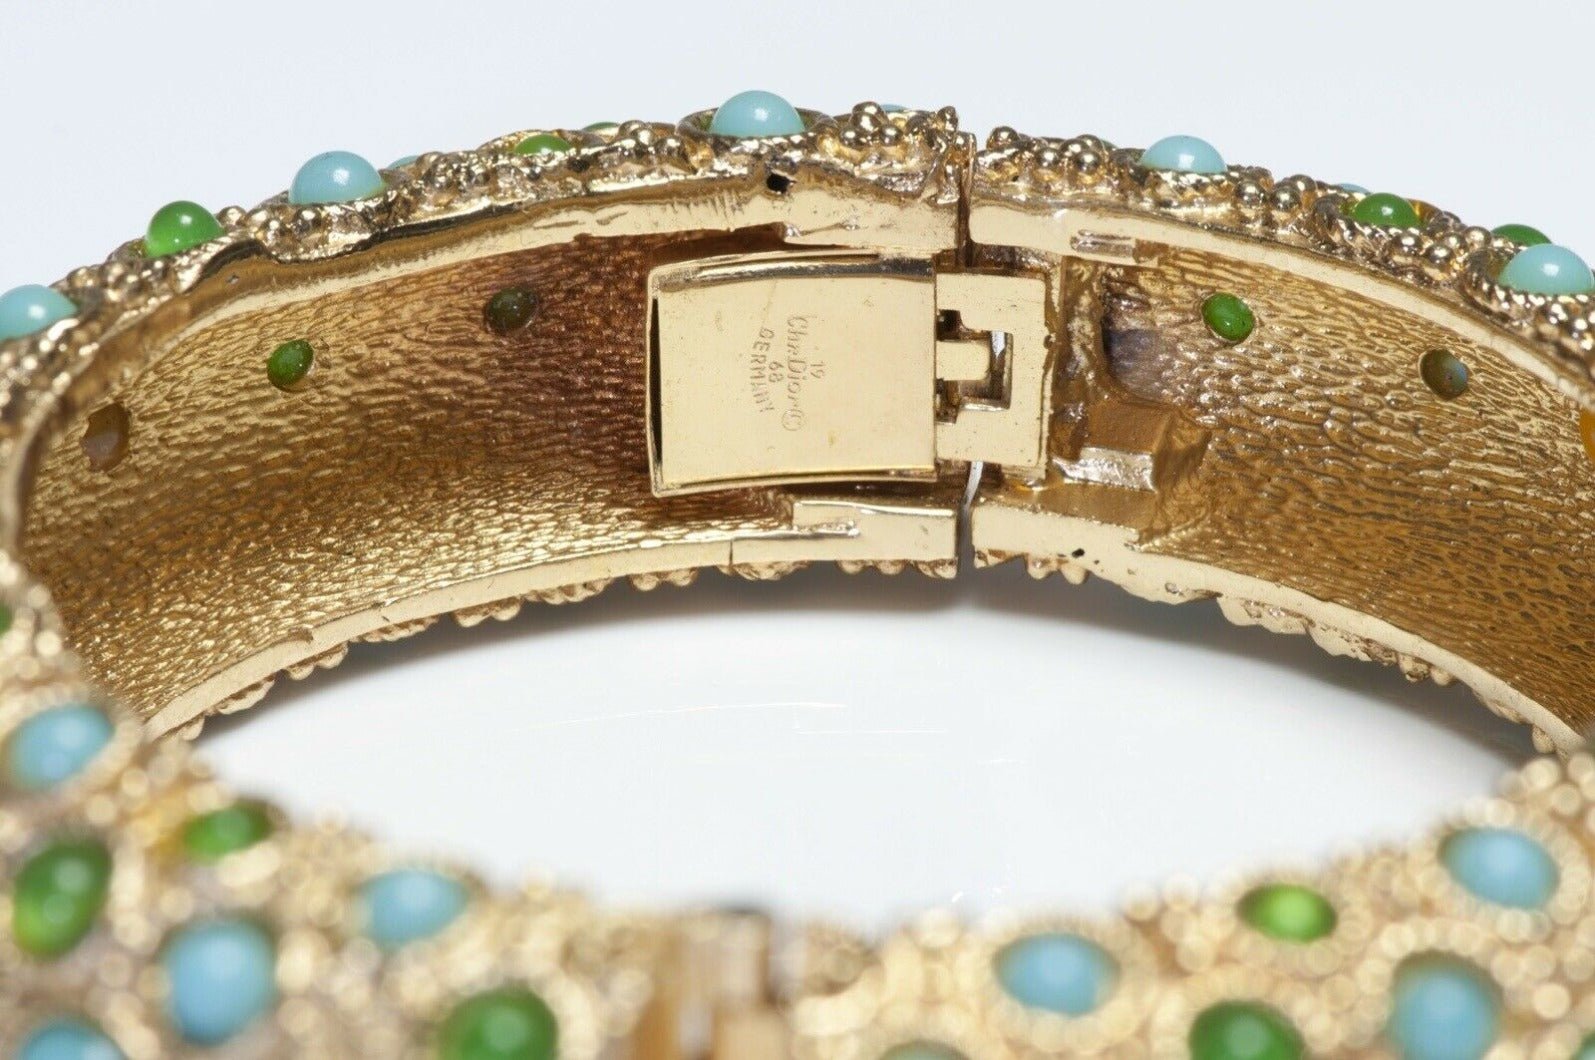 Christian Dior 1968 Henkel & Grosse Green Blue Cabochon Glass Bangle Bracelet